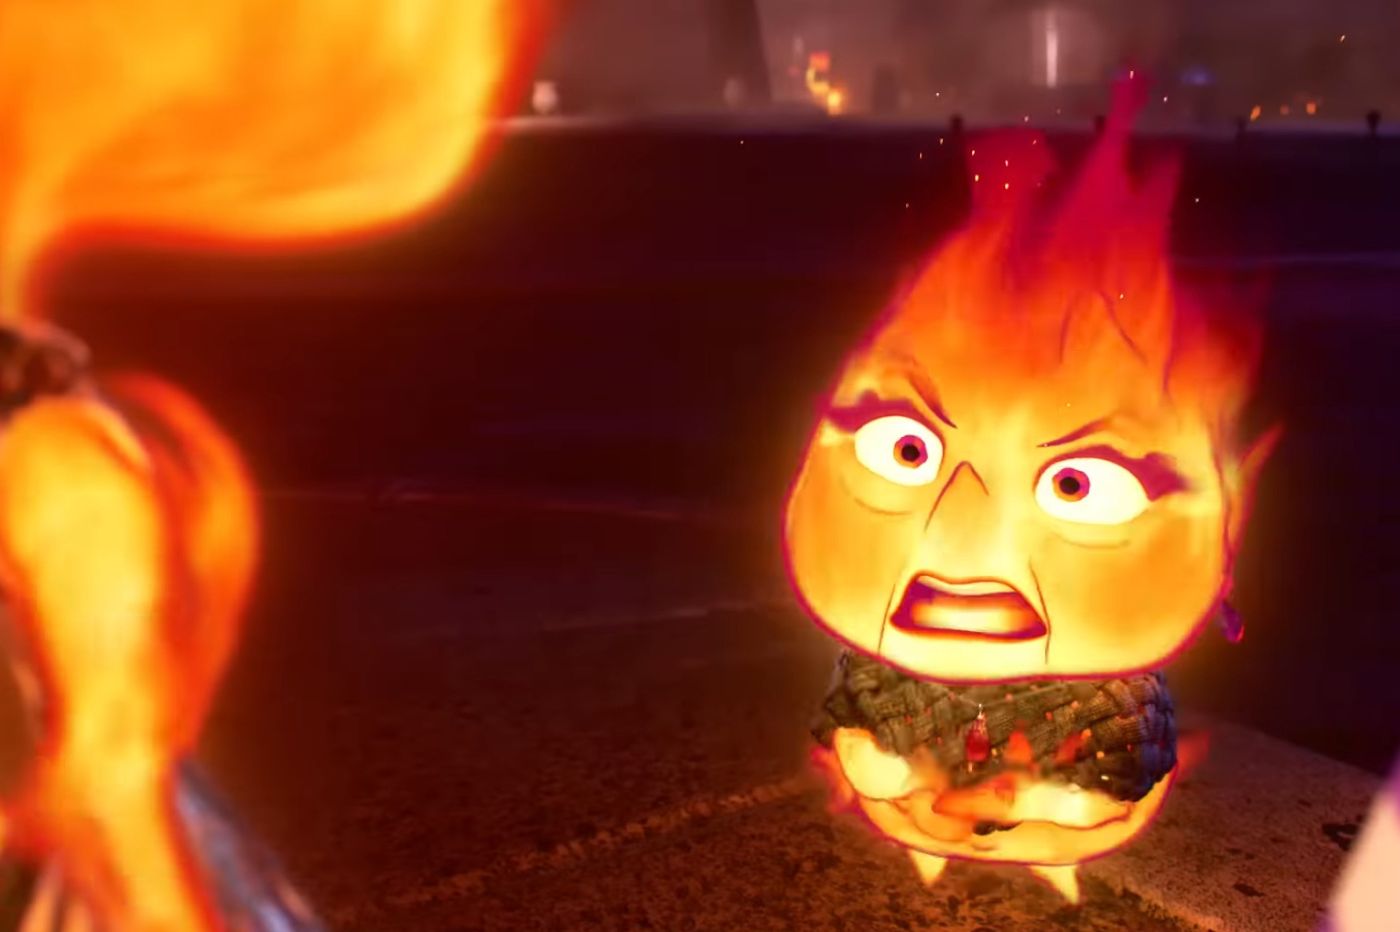 Critique Élémentaire : douche froide, Pixar perd sa flamme 🔥